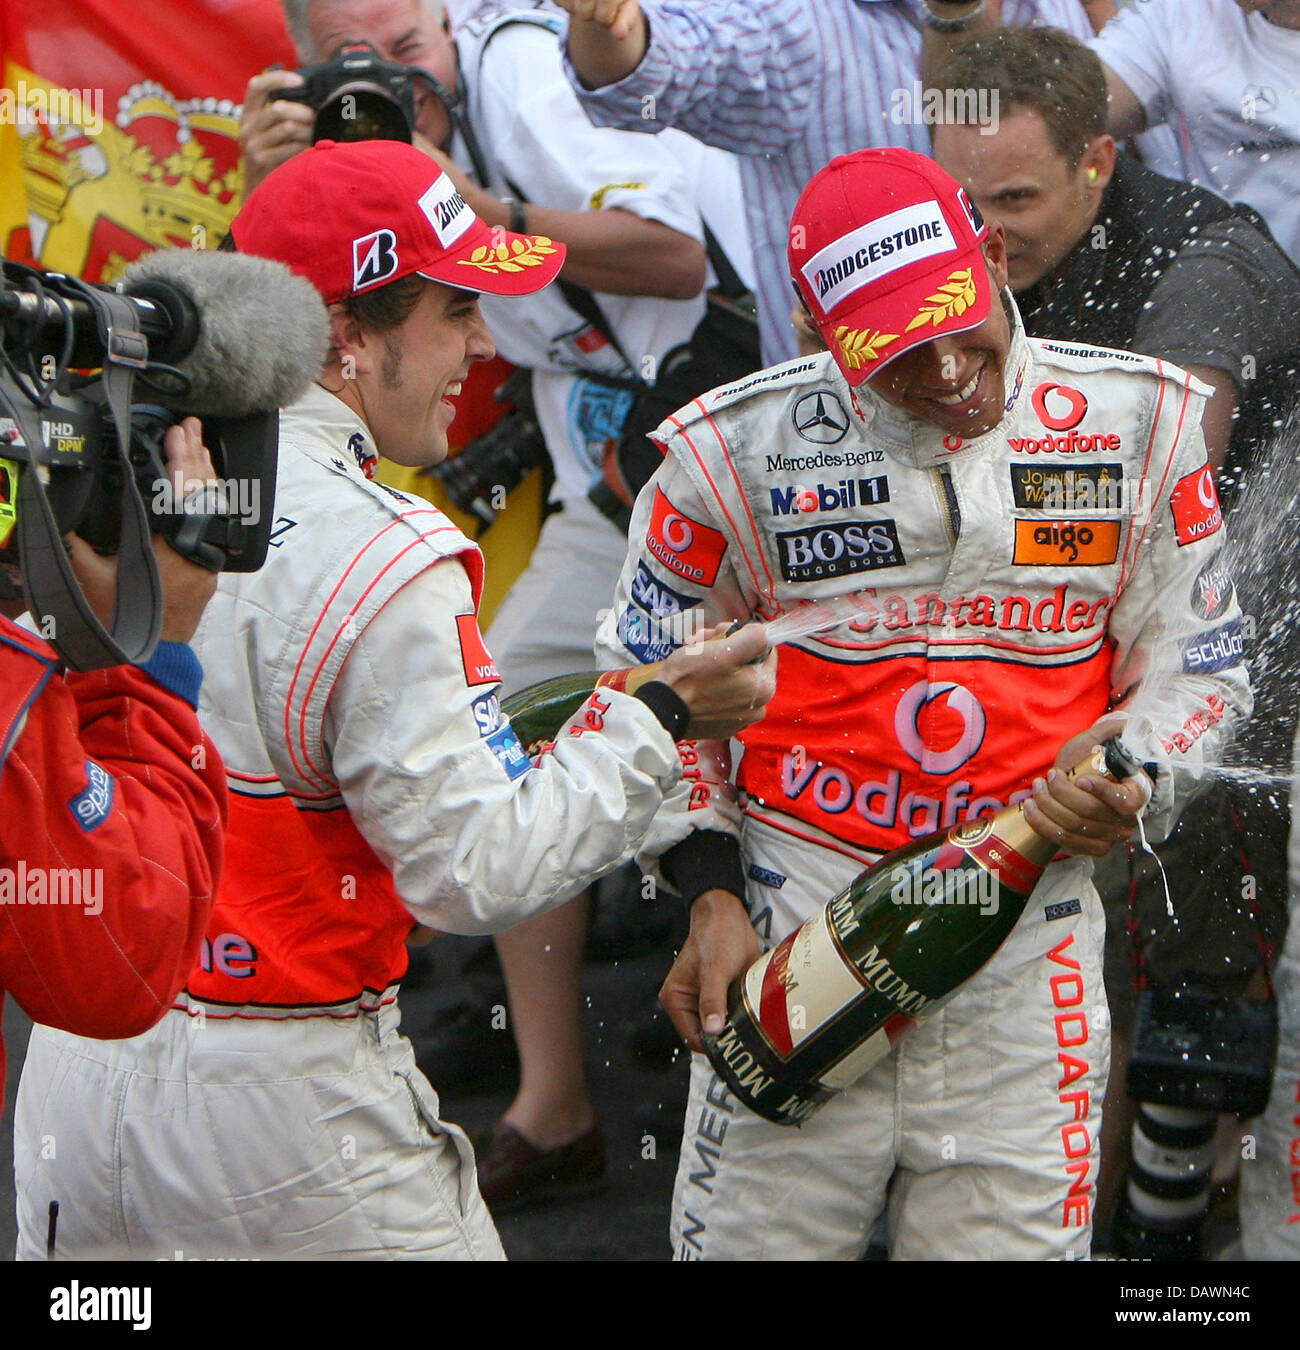 Lo spagnolo pilota di Formula Uno Fernando Alonso (L) e il suo compagno di squadra britannico Lewis Hamilton spruzzare champagne ad ogni altro dopo Alonso ha vinto il Gran Premio di Monaco e Hamilton finito al secondo posto a Monte Carlo, Monaco, domenica 27 maggio 2007. Foto: Jens BUETTNER Foto Stock